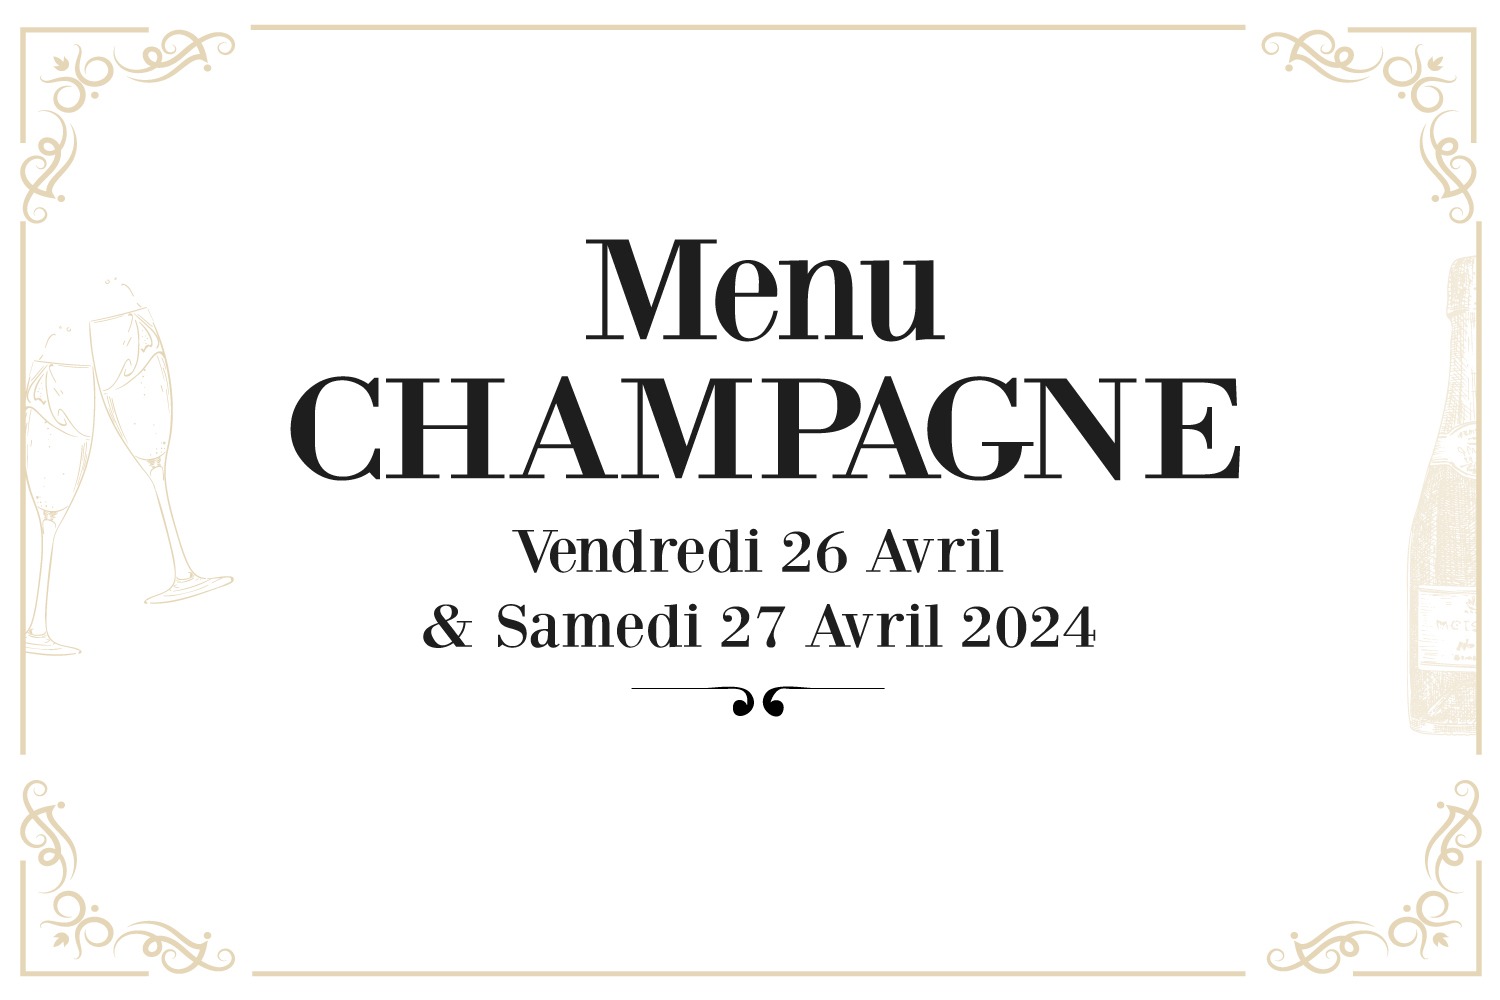 Champagne : Menu spécial Champagne au SKAB les 26 et 27 Avril 2024